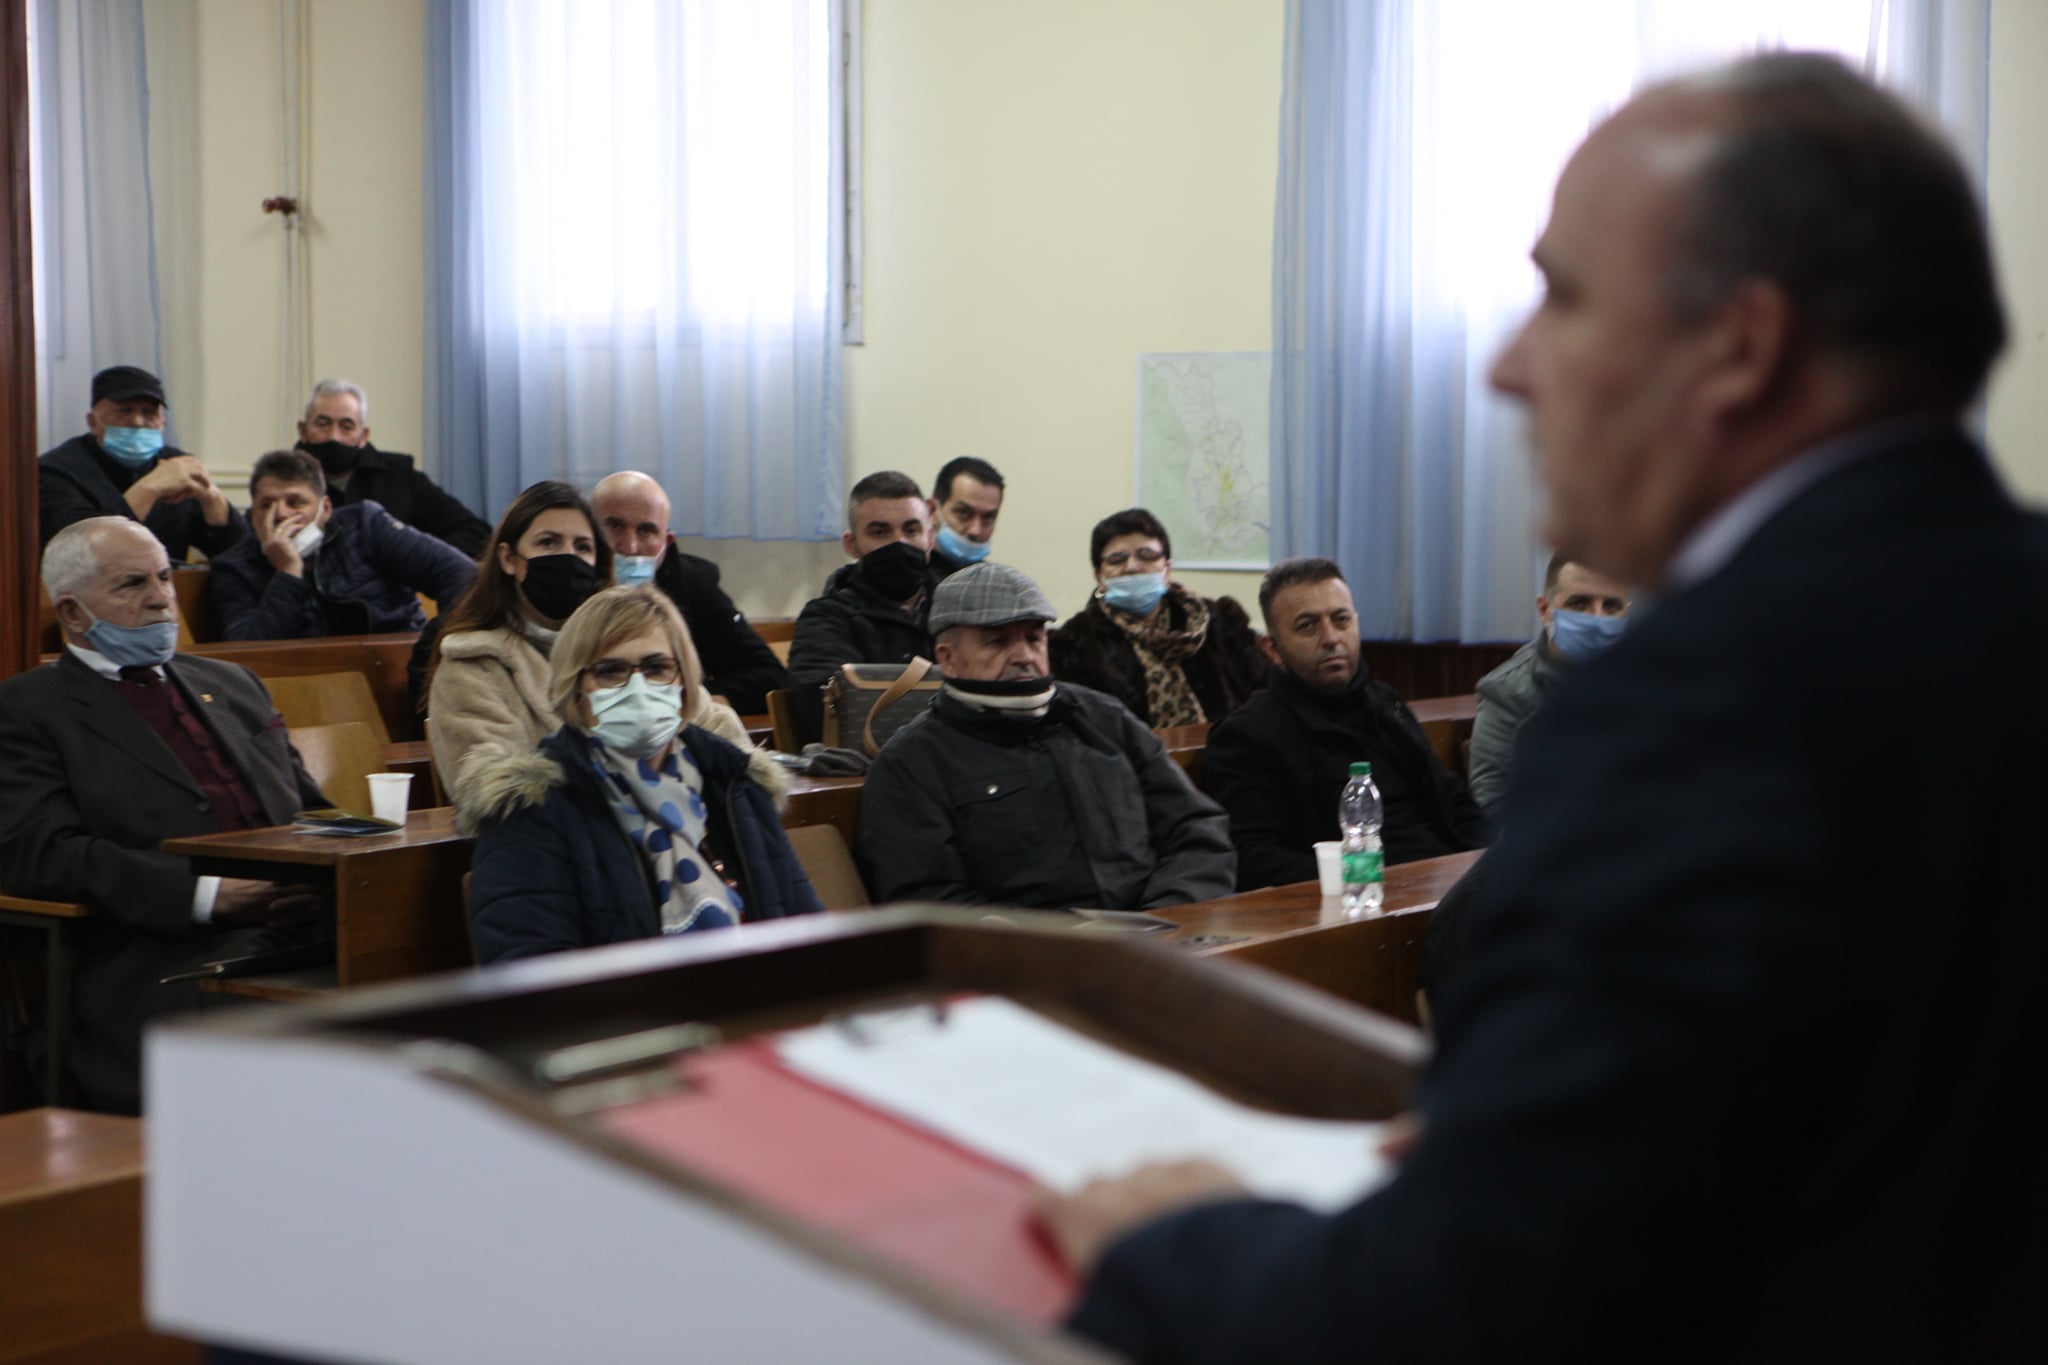  Komuna e Podujevës organizoi takim falënderues me bashkatdhetarët